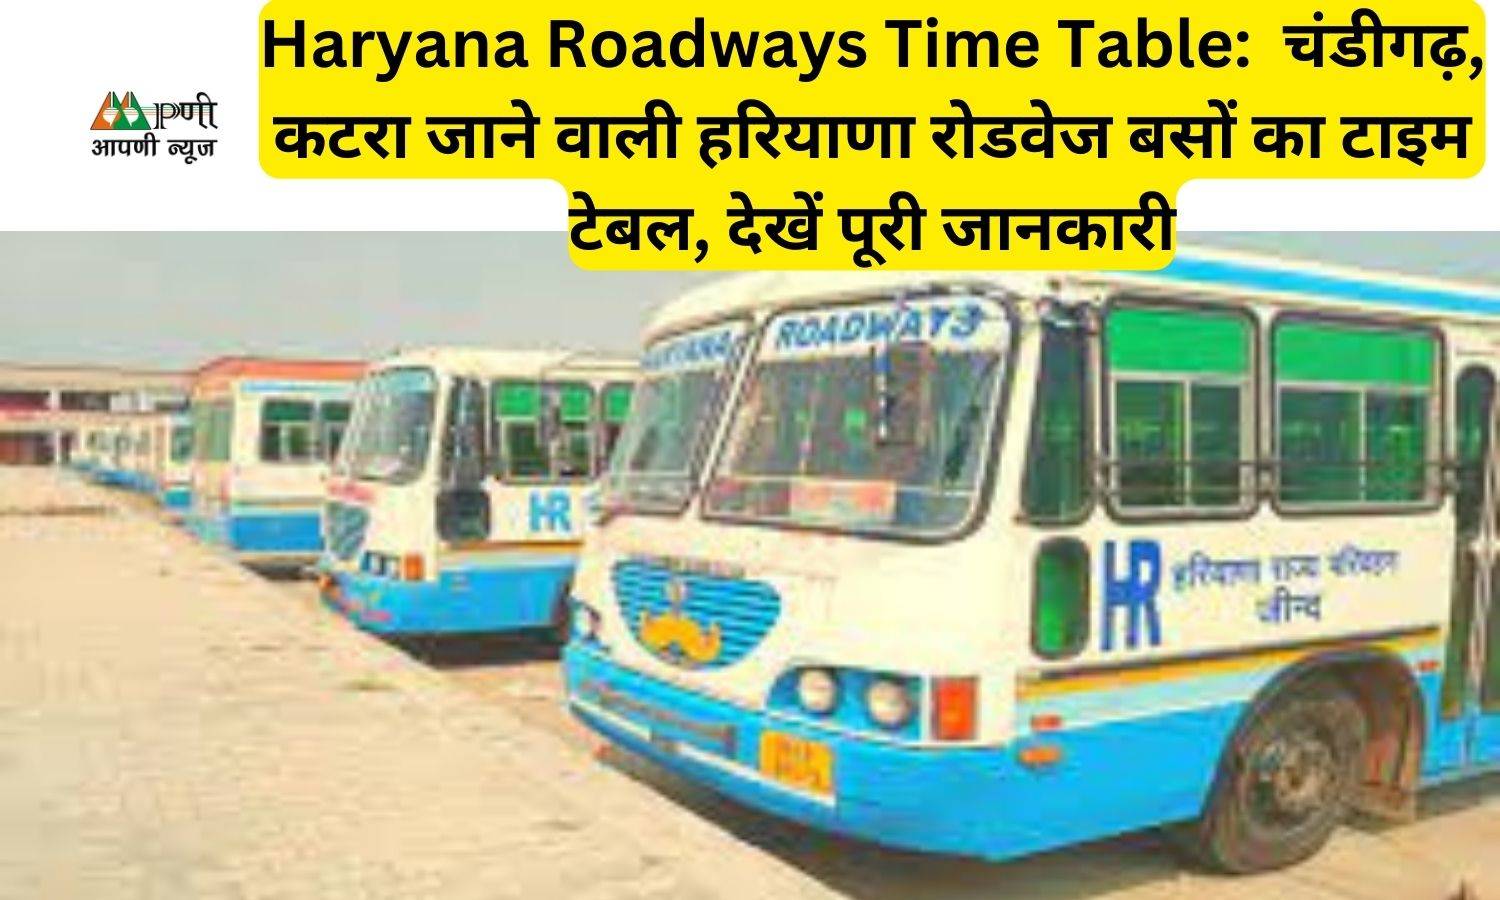 Haryana Roadways Time Table:  चंडीगढ़, कटरा जाने वाली हरियाणा रोडवेज बसों का टाइम टेबल, देखें पूरी जानकारी